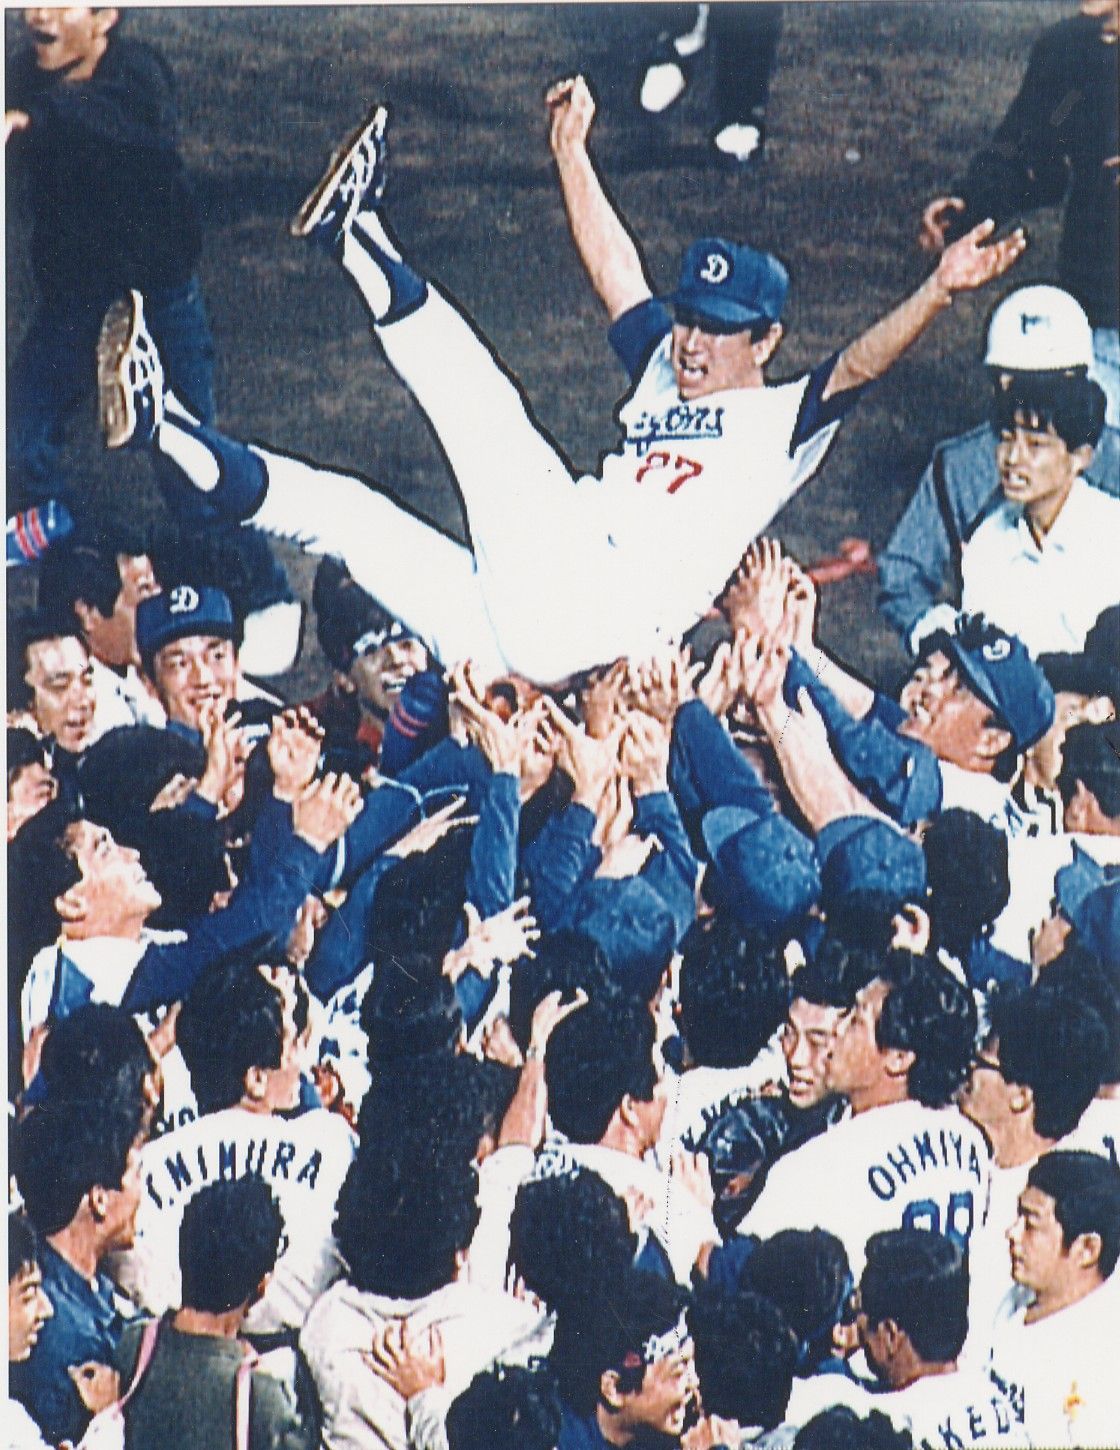 中日ドラゴンズ優勝記念純金メダル1988年 - 野球